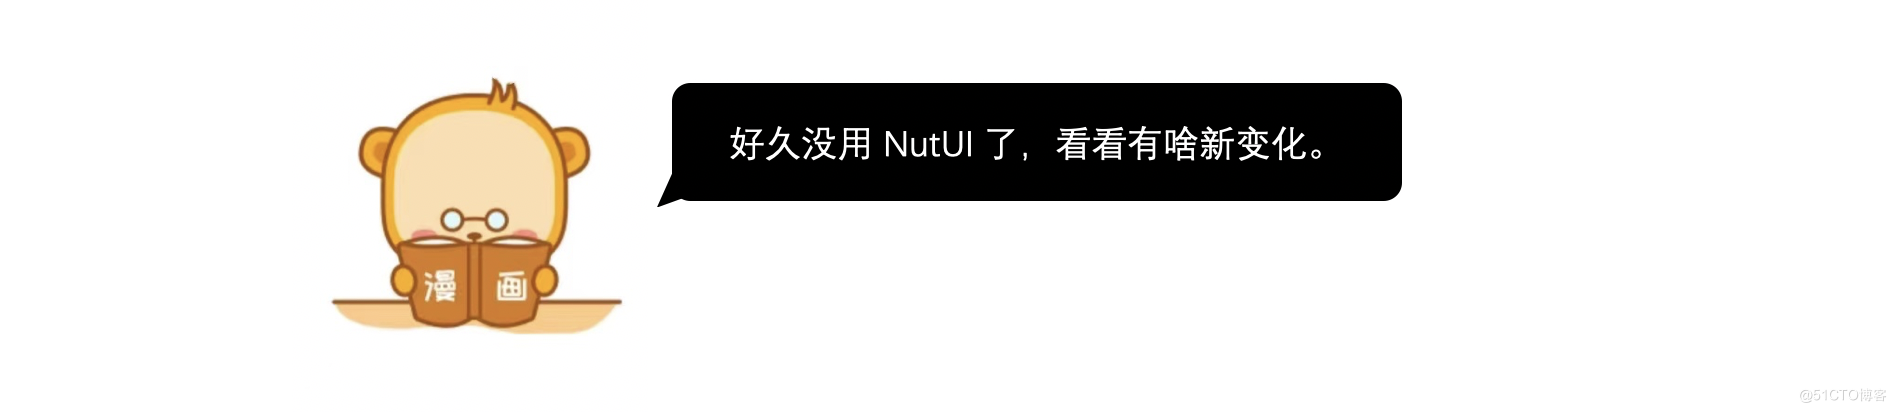 金先生的 NutUI3 初体验_NutUI_04